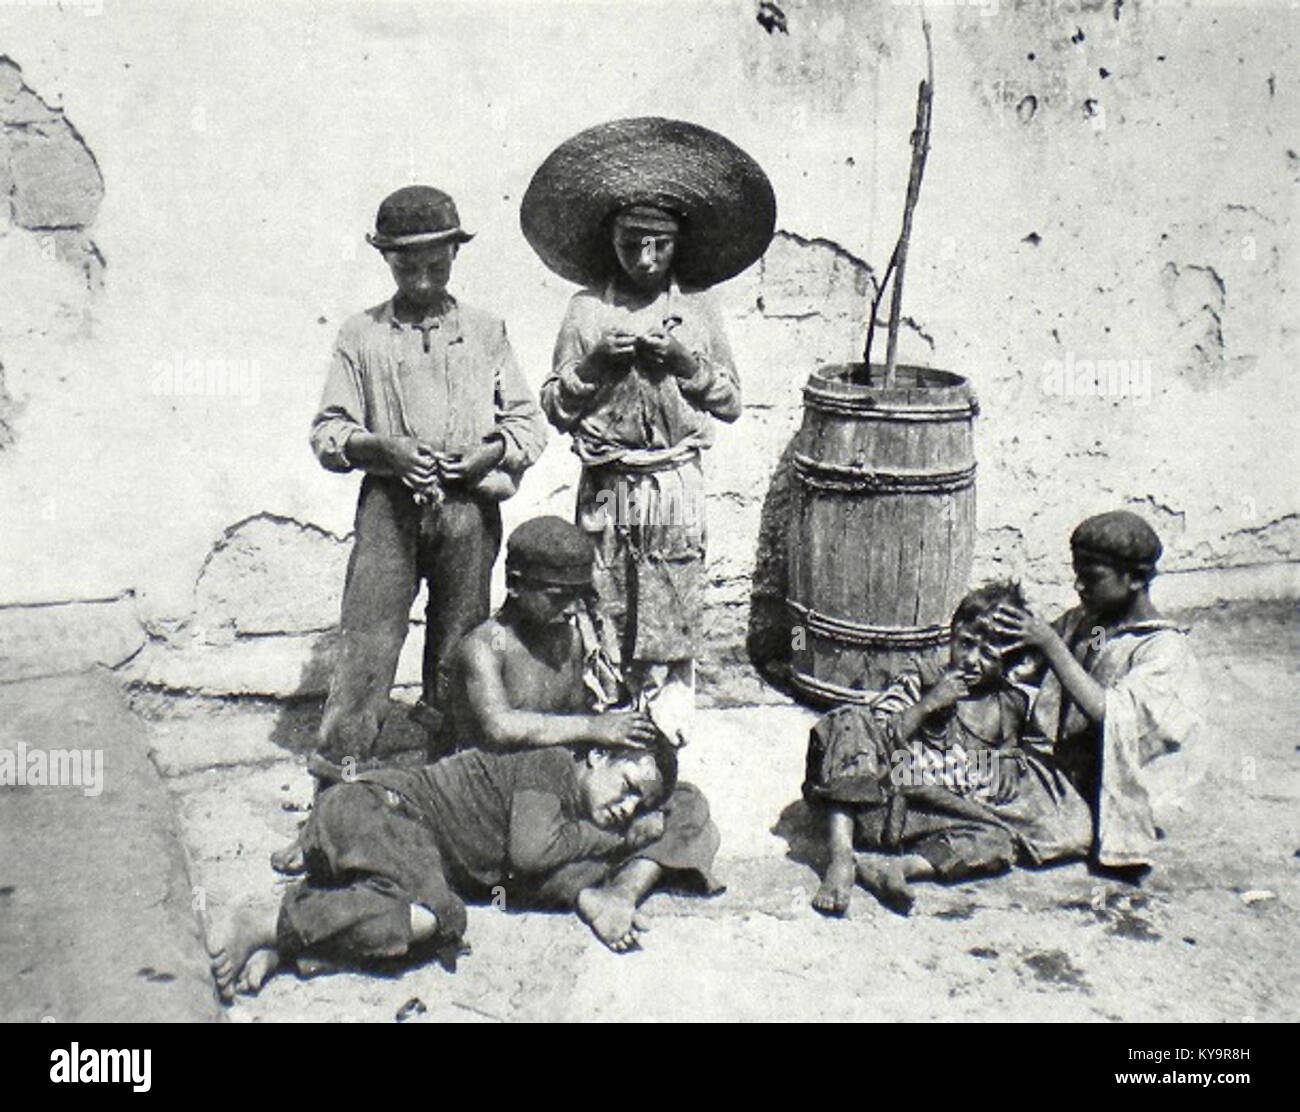 Scugnizzi intenti a spidocchiarsi, Napoli 1880 Foto stock - Alamy